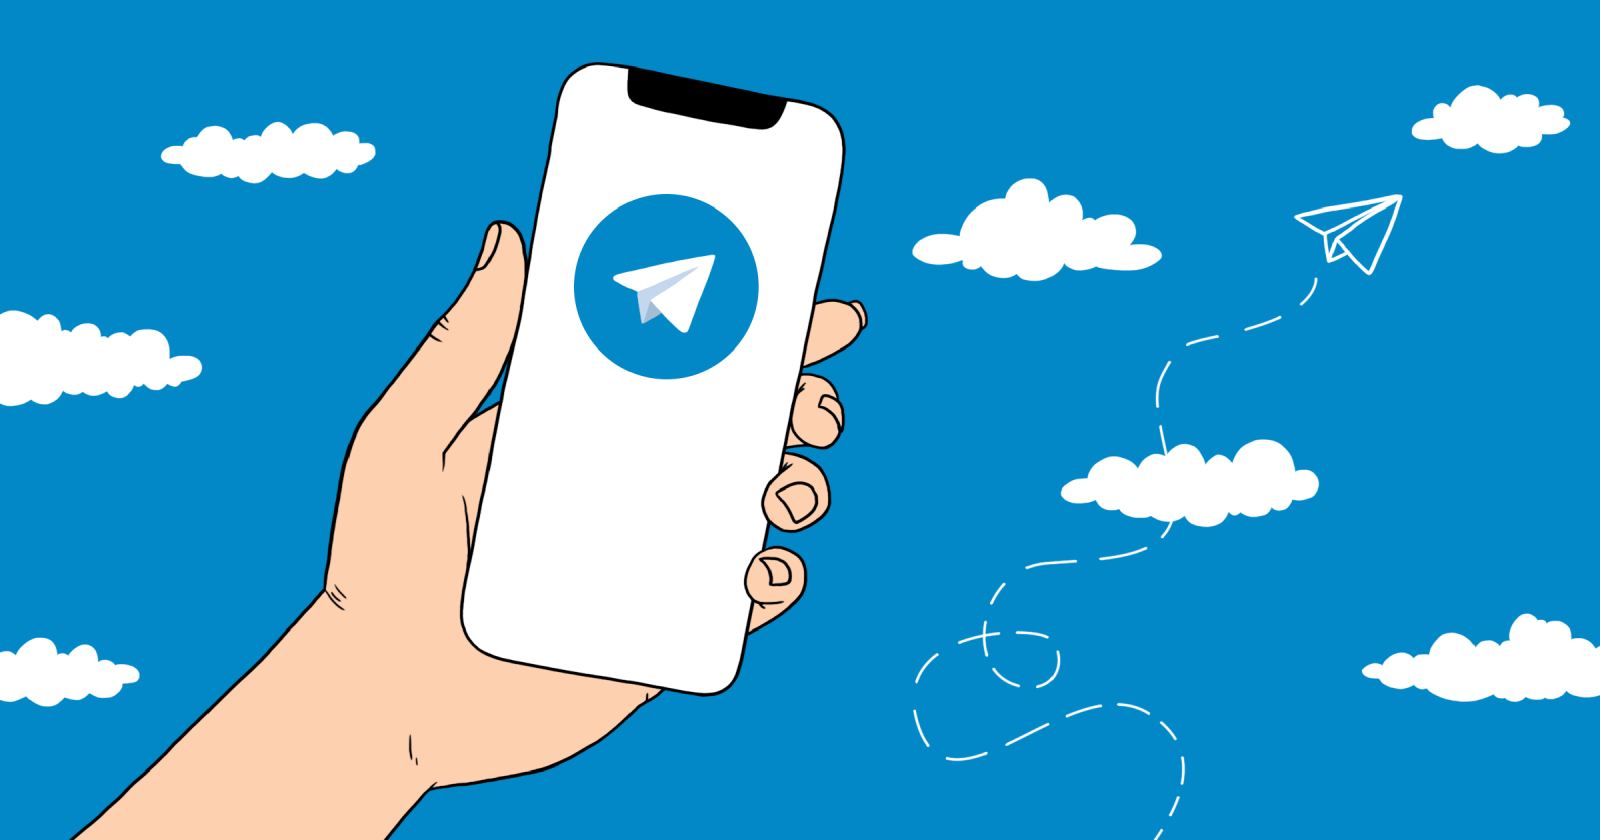 Telegram как рекламоноситель вырастет почти в два раза